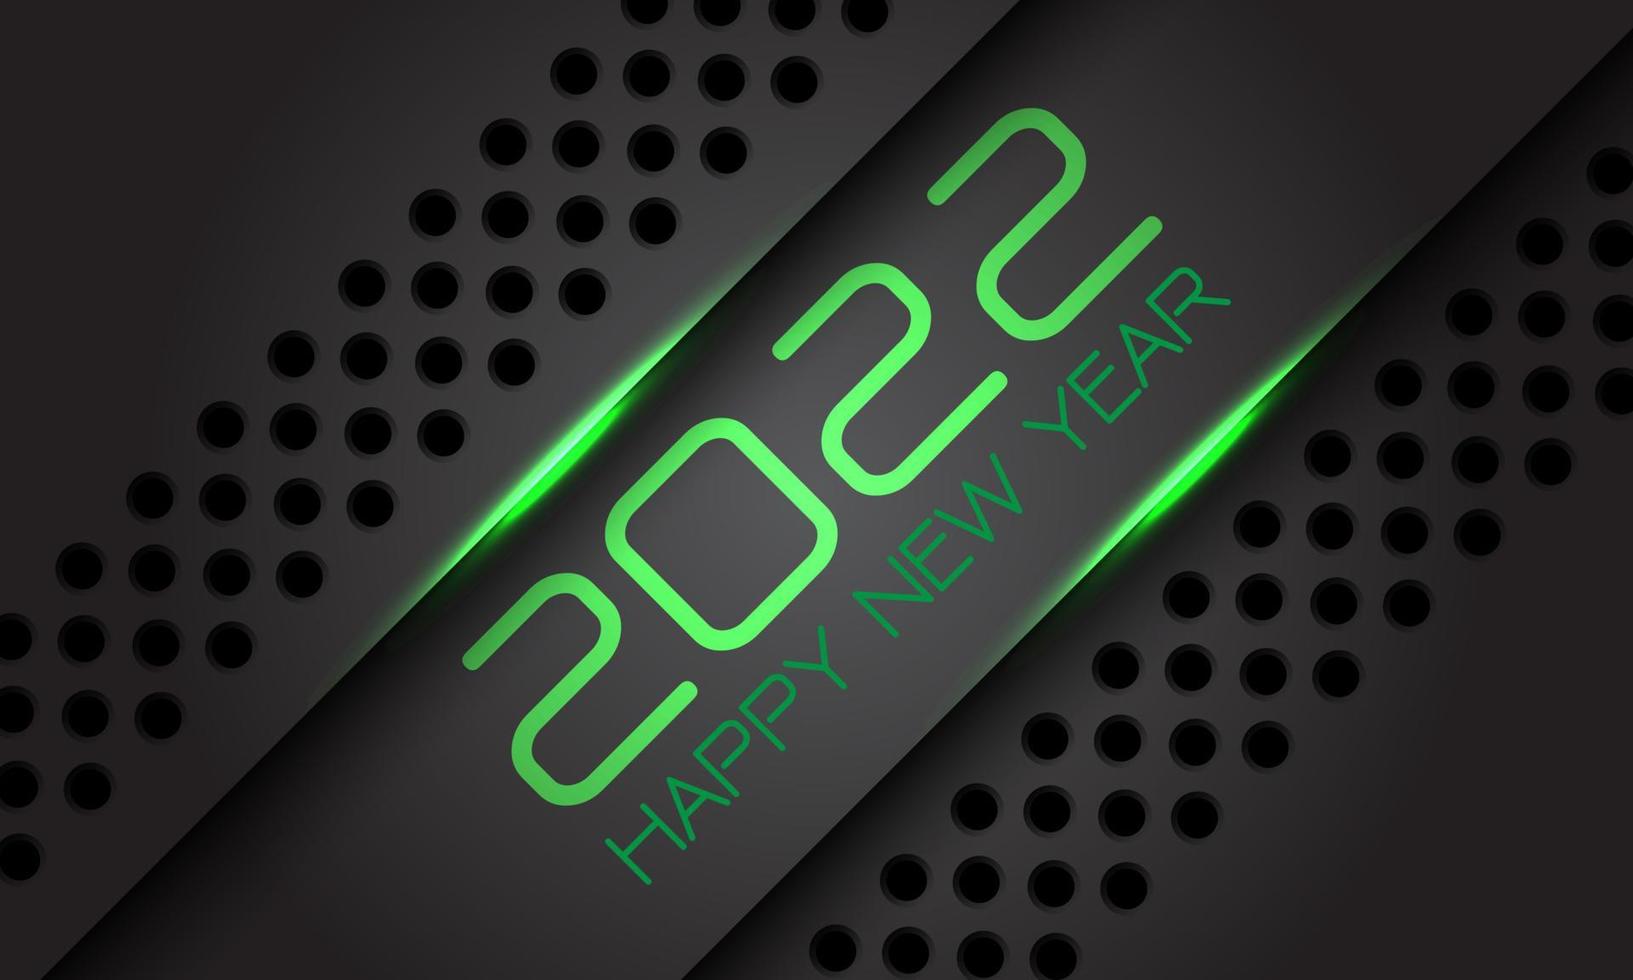 Frohes neues Jahr 2022 grau metallic Kreis Mesh grün Neonlicht Text Nummer Design für Countdown Urlaub Festival Feier Party Hintergrund Vektor